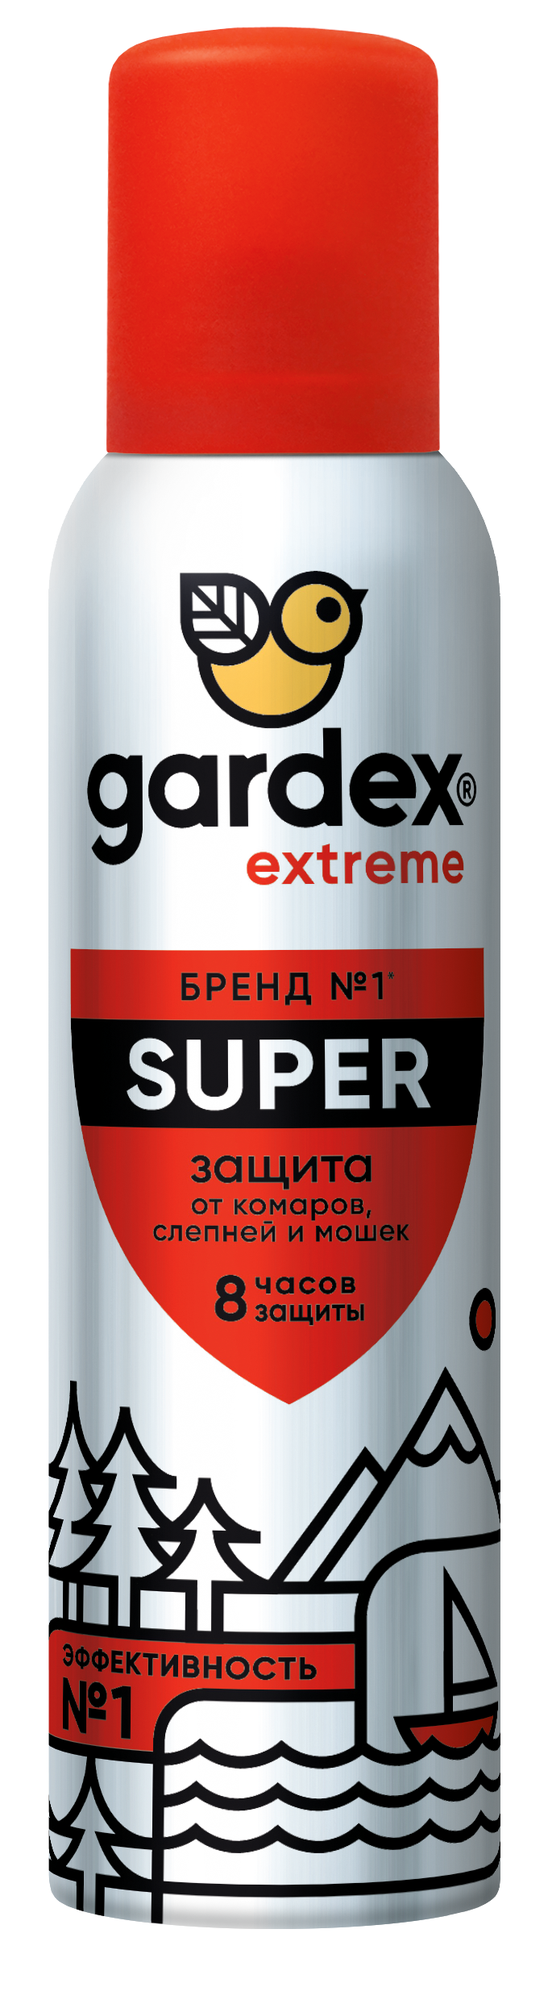 Аэрозоль Gardex Extreme Super от комаров и других насекомых